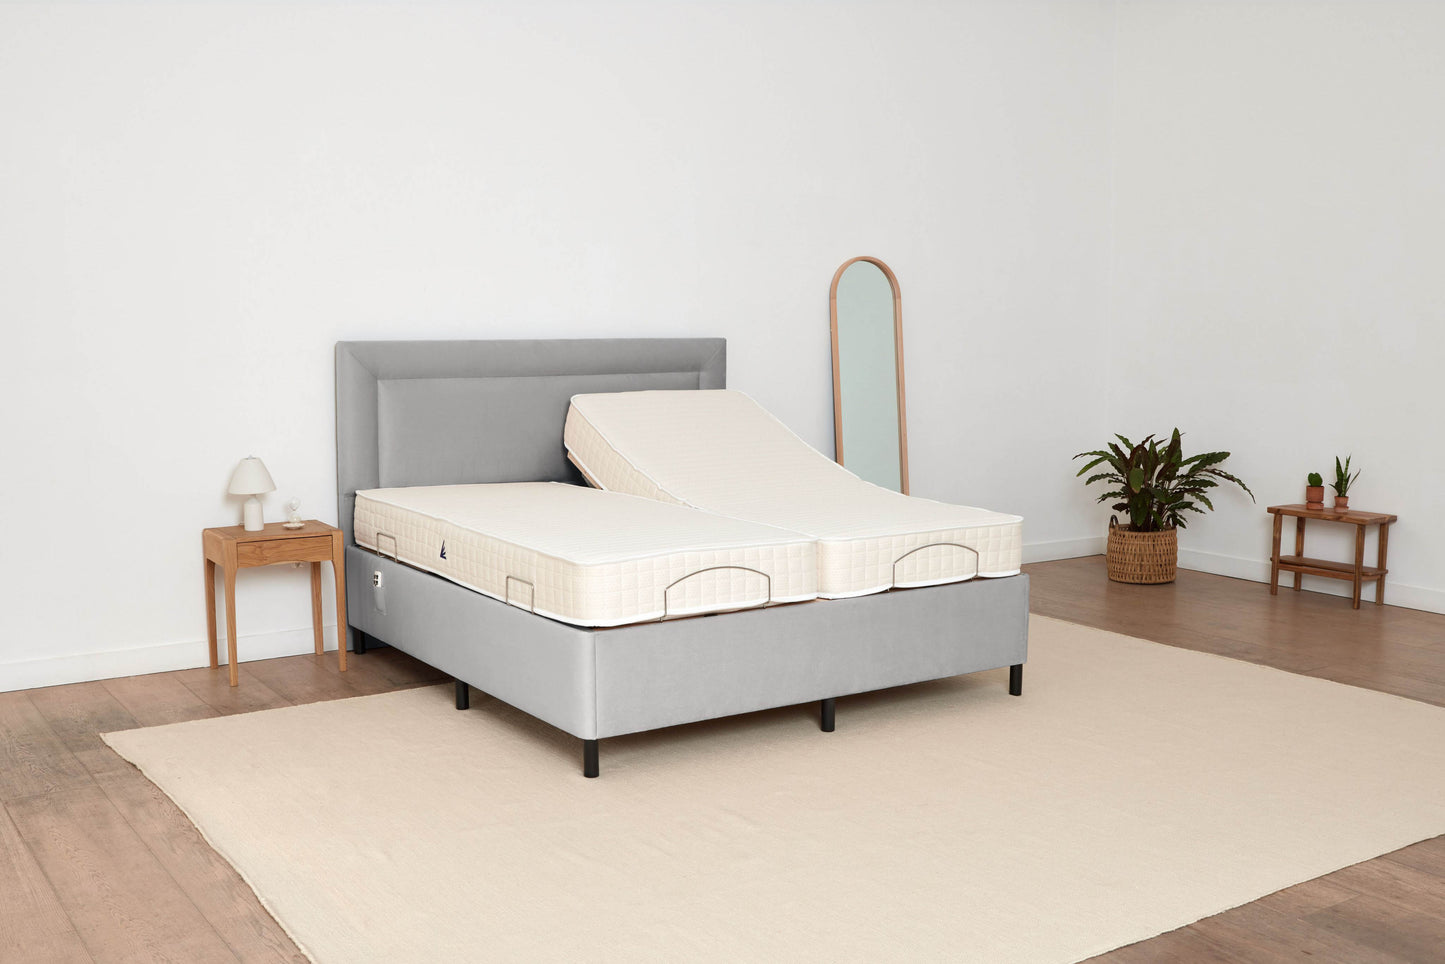 6 Foot Grey Adjustable Bed